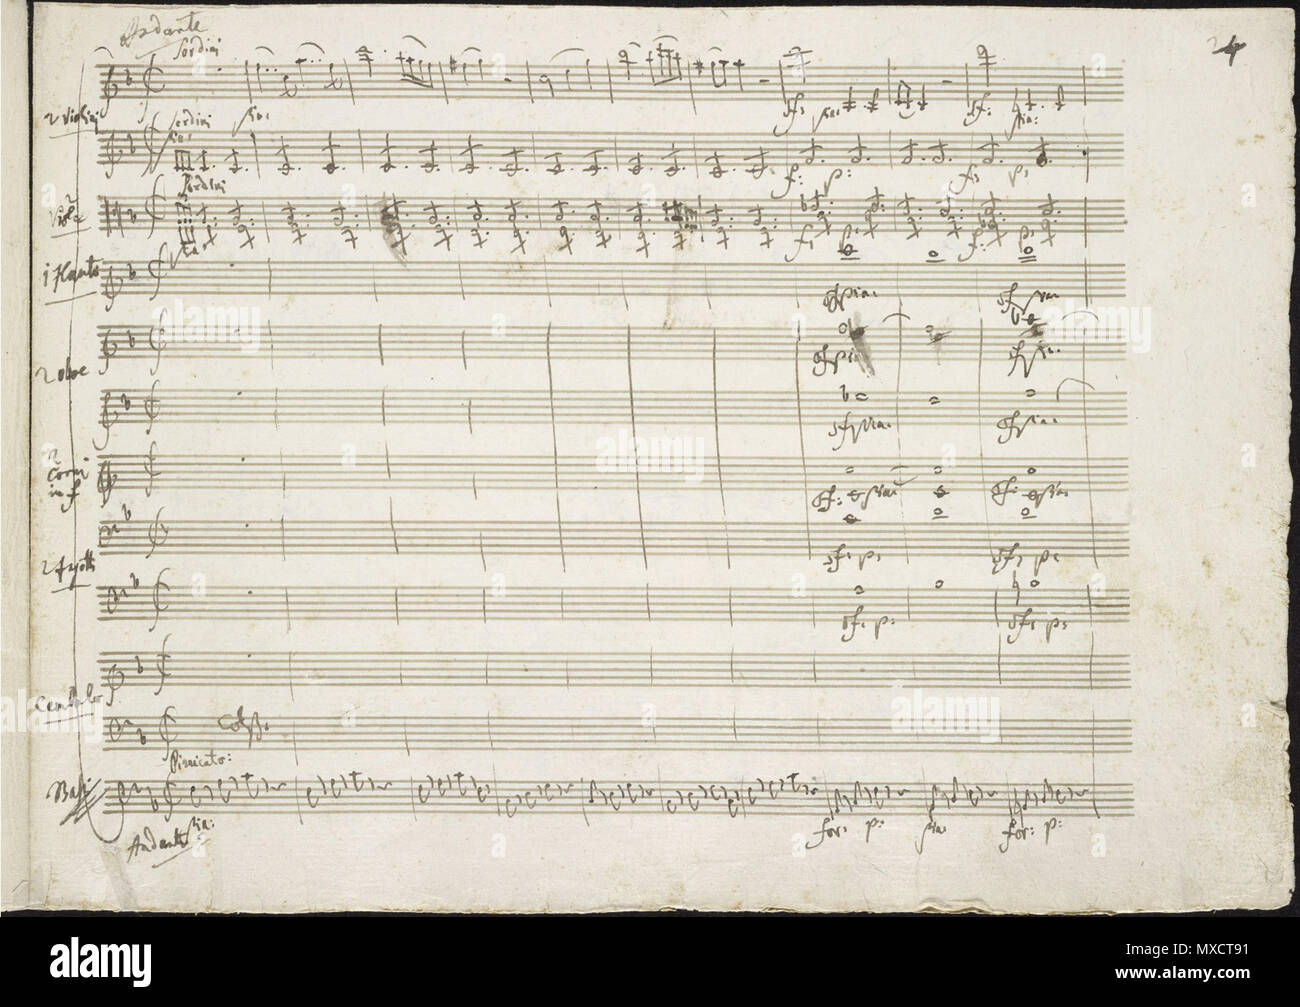 Inglés: la apertura del segundo movimiento del concierto para piano de  Mozart nº 21, K. 467, de Mozart la escritura a mano. 9 de marzo de 1785.  Wolfgang Amadeus Mozart (1756-1791)